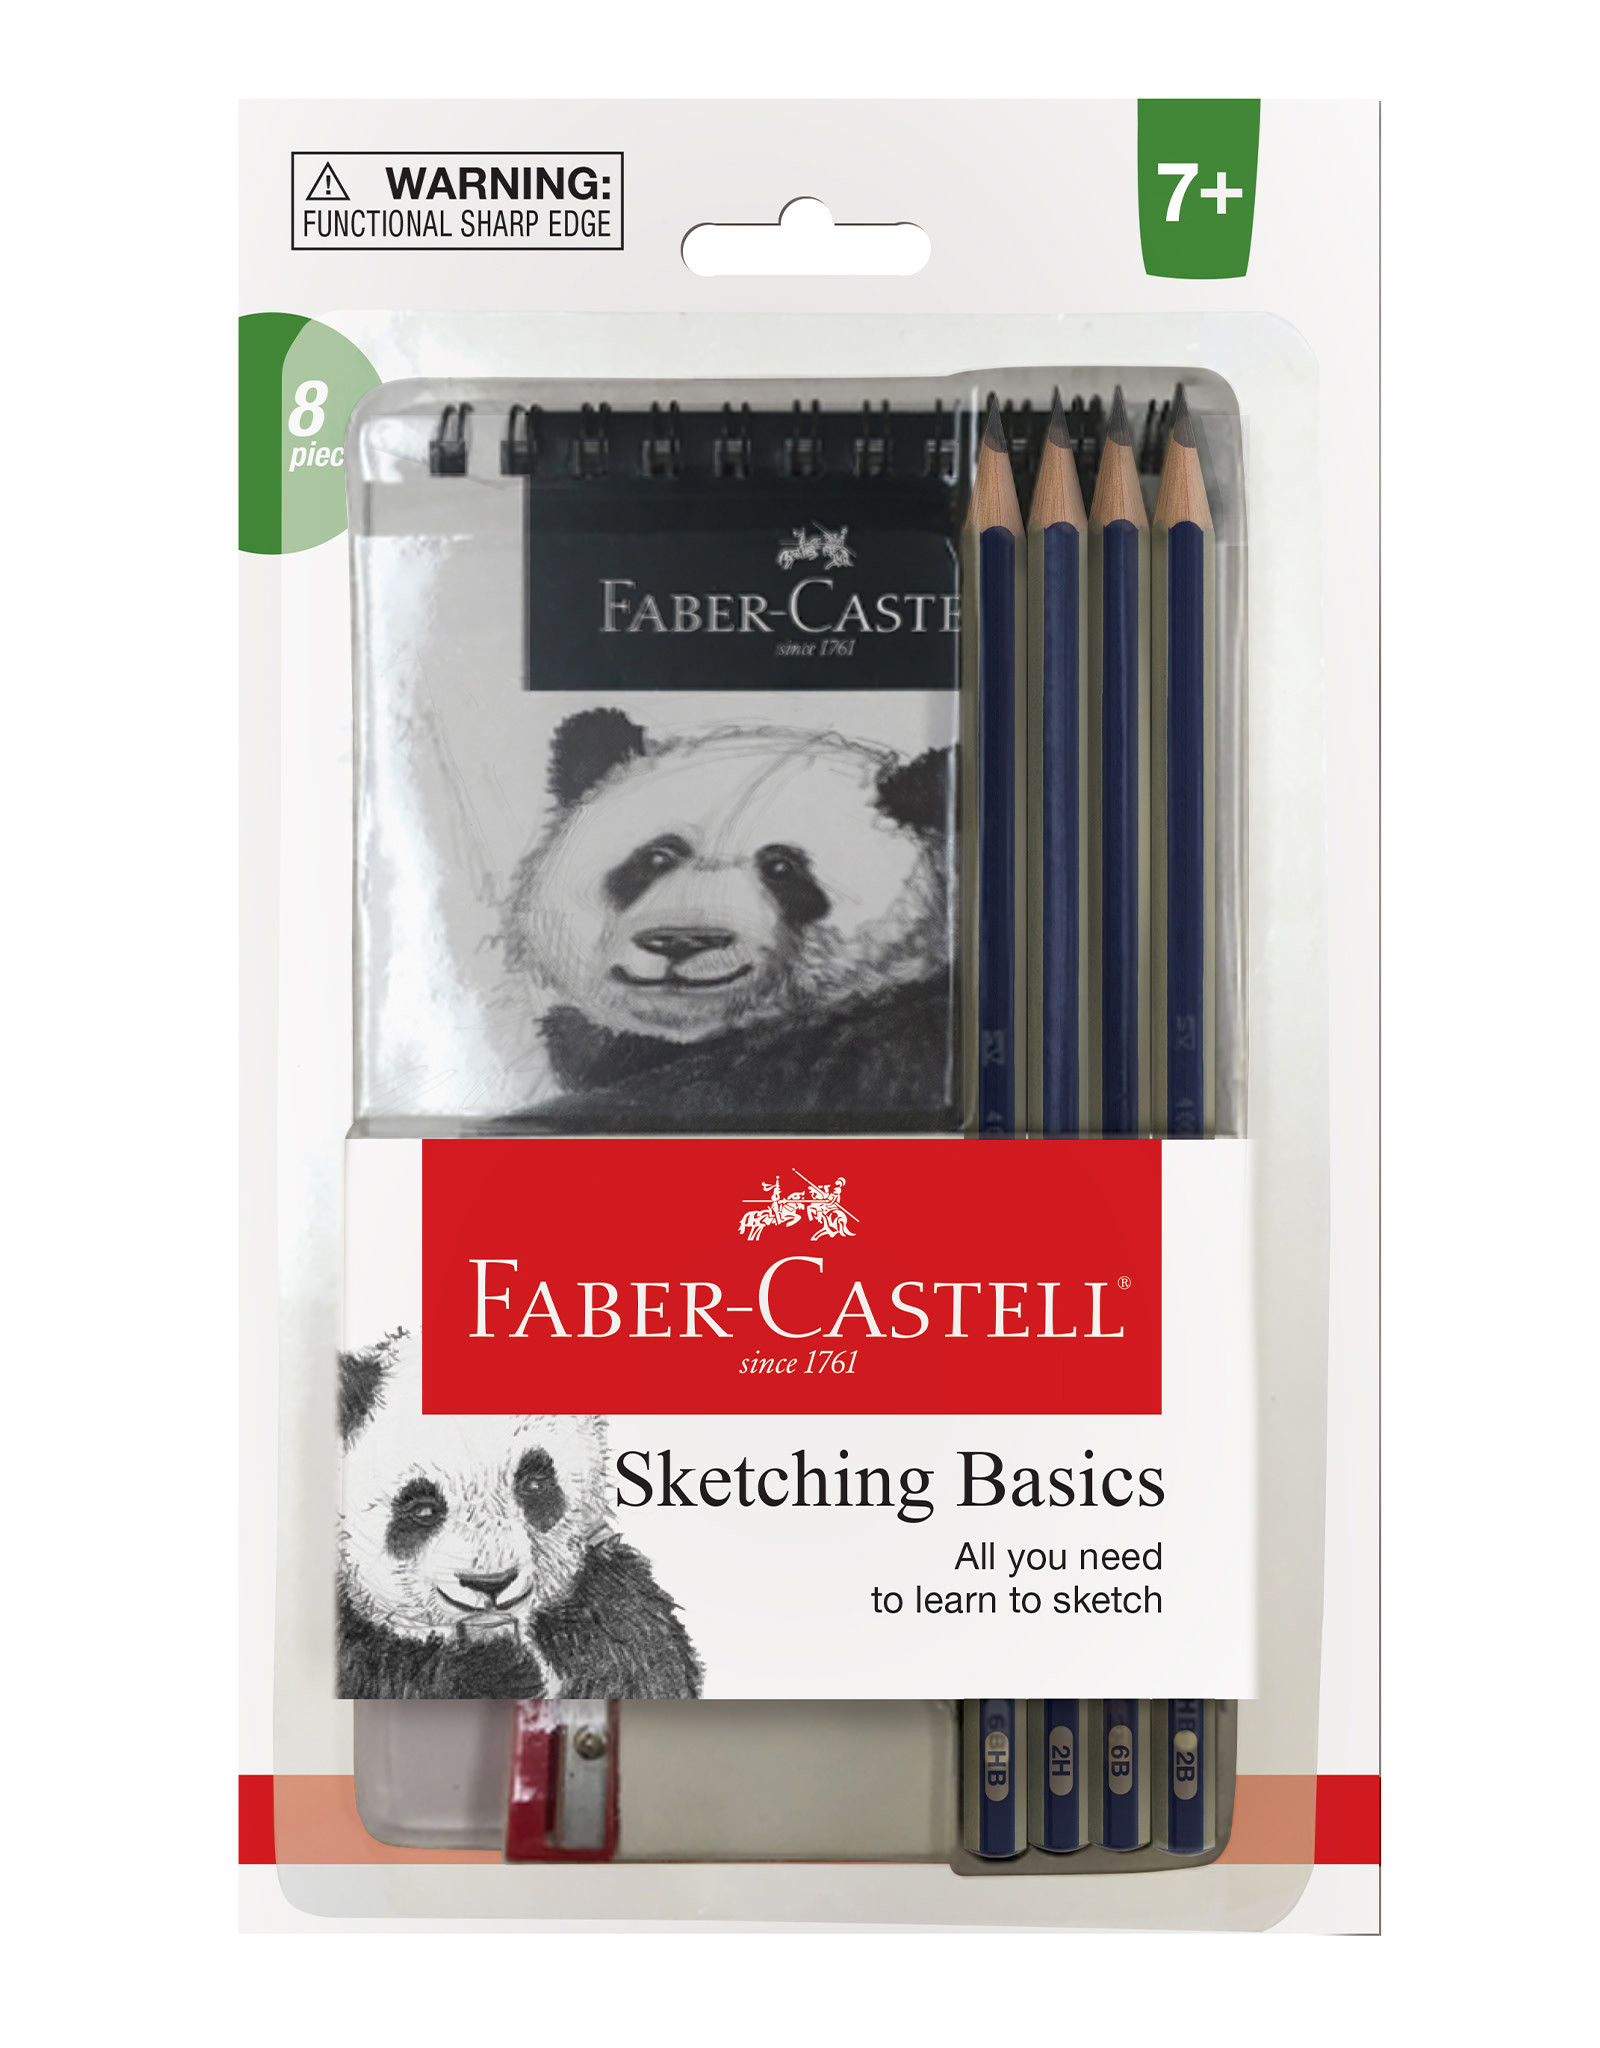 FABER-CASTELL Sketch Basics Set of 8